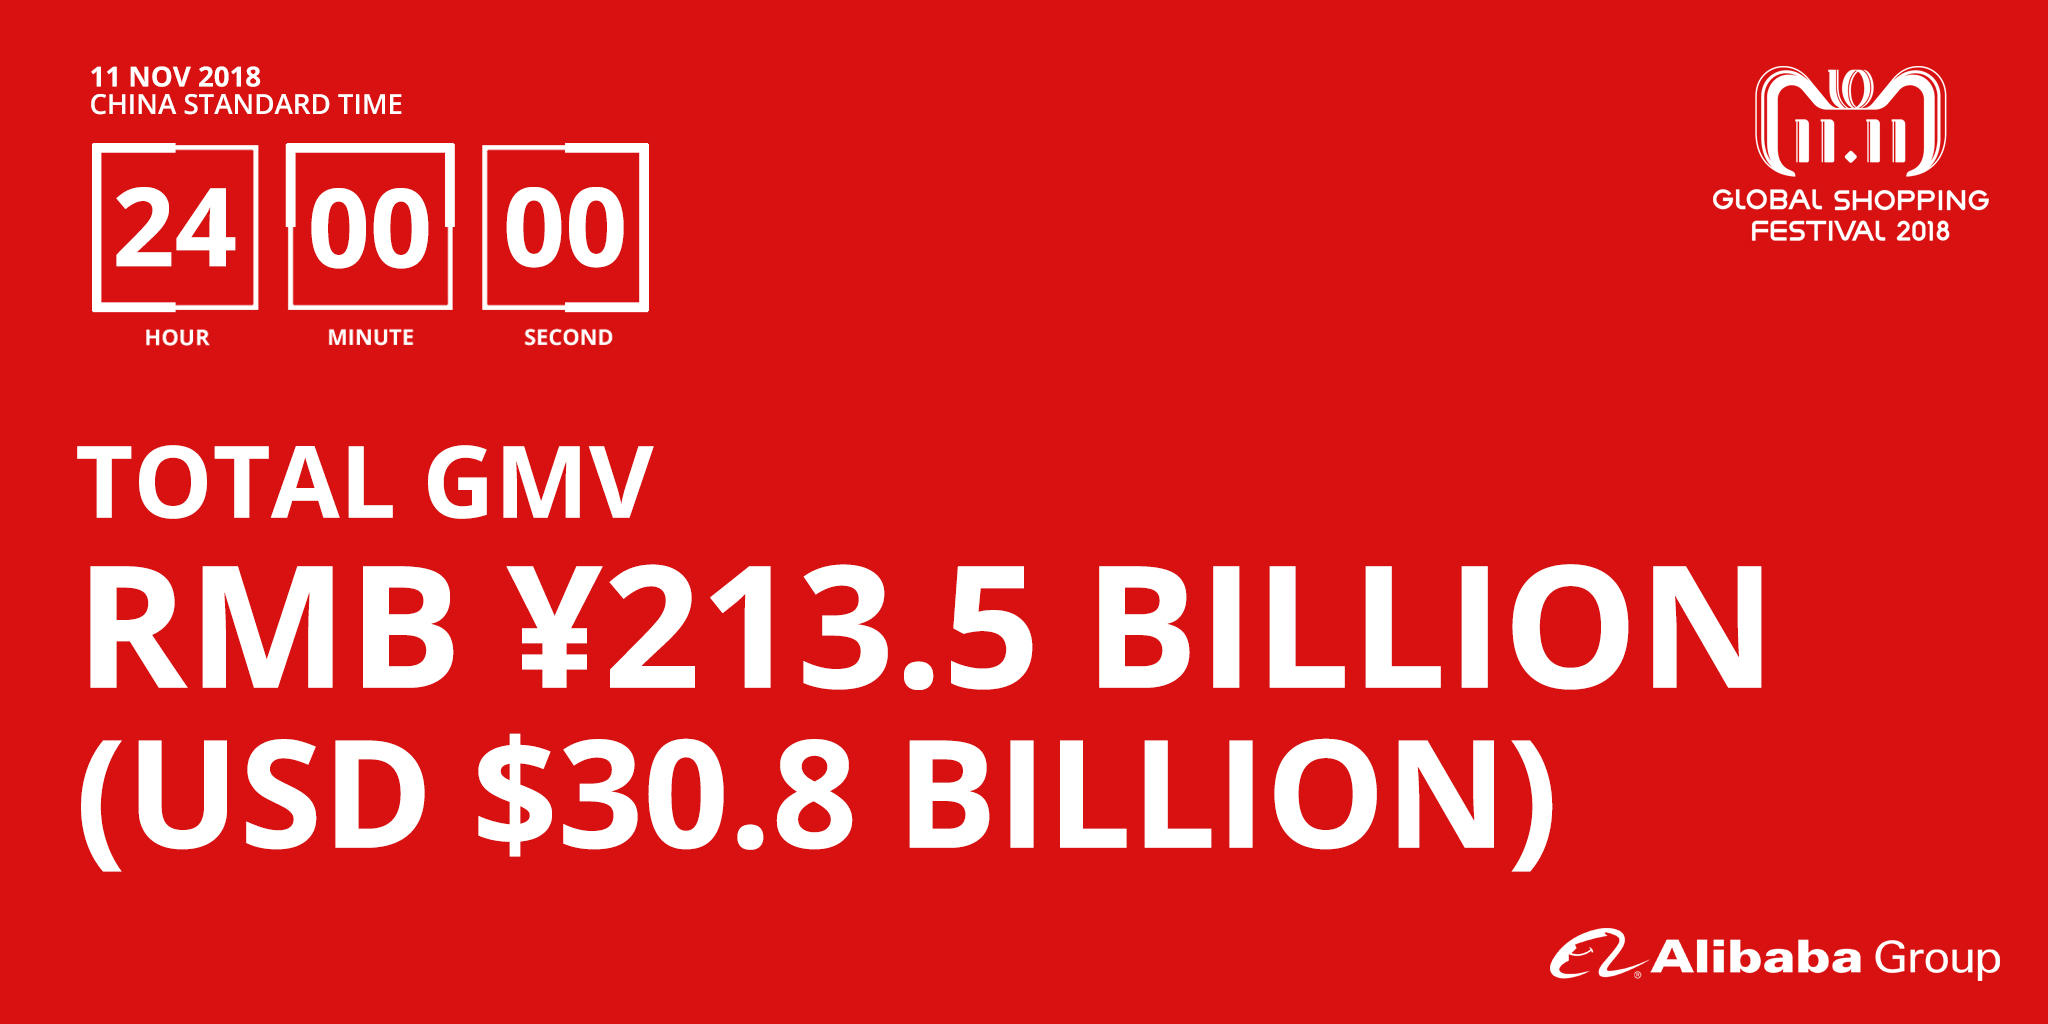 USD 30.8 Milliarden Umsatz (GMV) am 11.11.2018 (Single's Day) alleine bei Alibaba